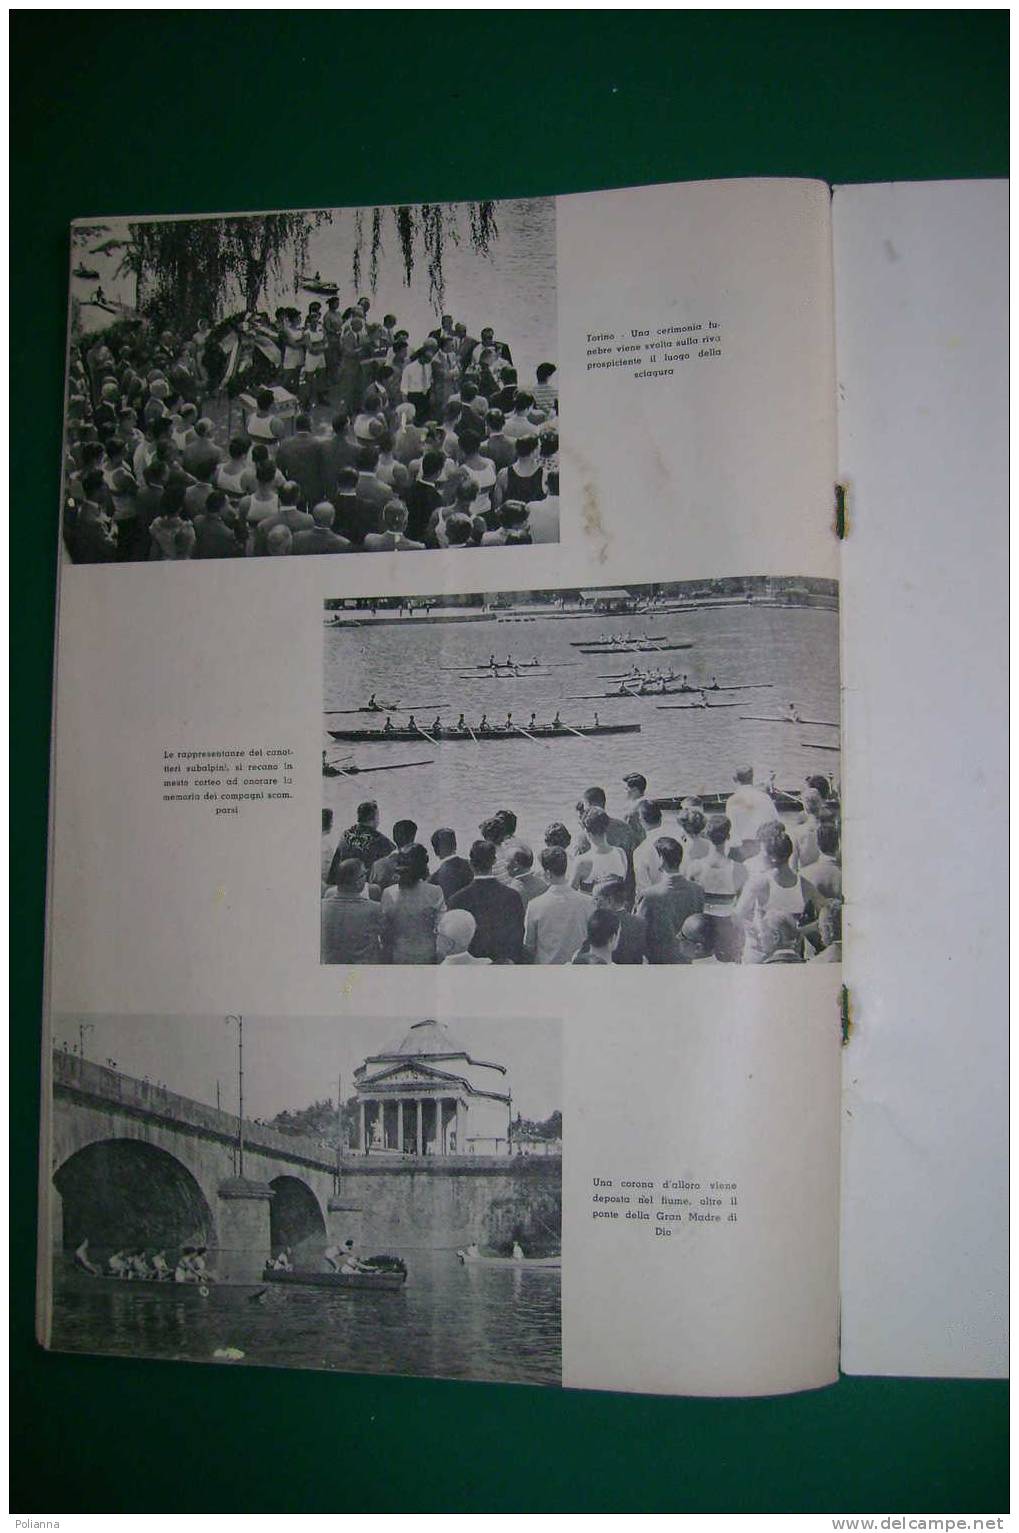 PDL/40 IL CANOTTAGGIO Rivista Ufficiale 1959 - Libri